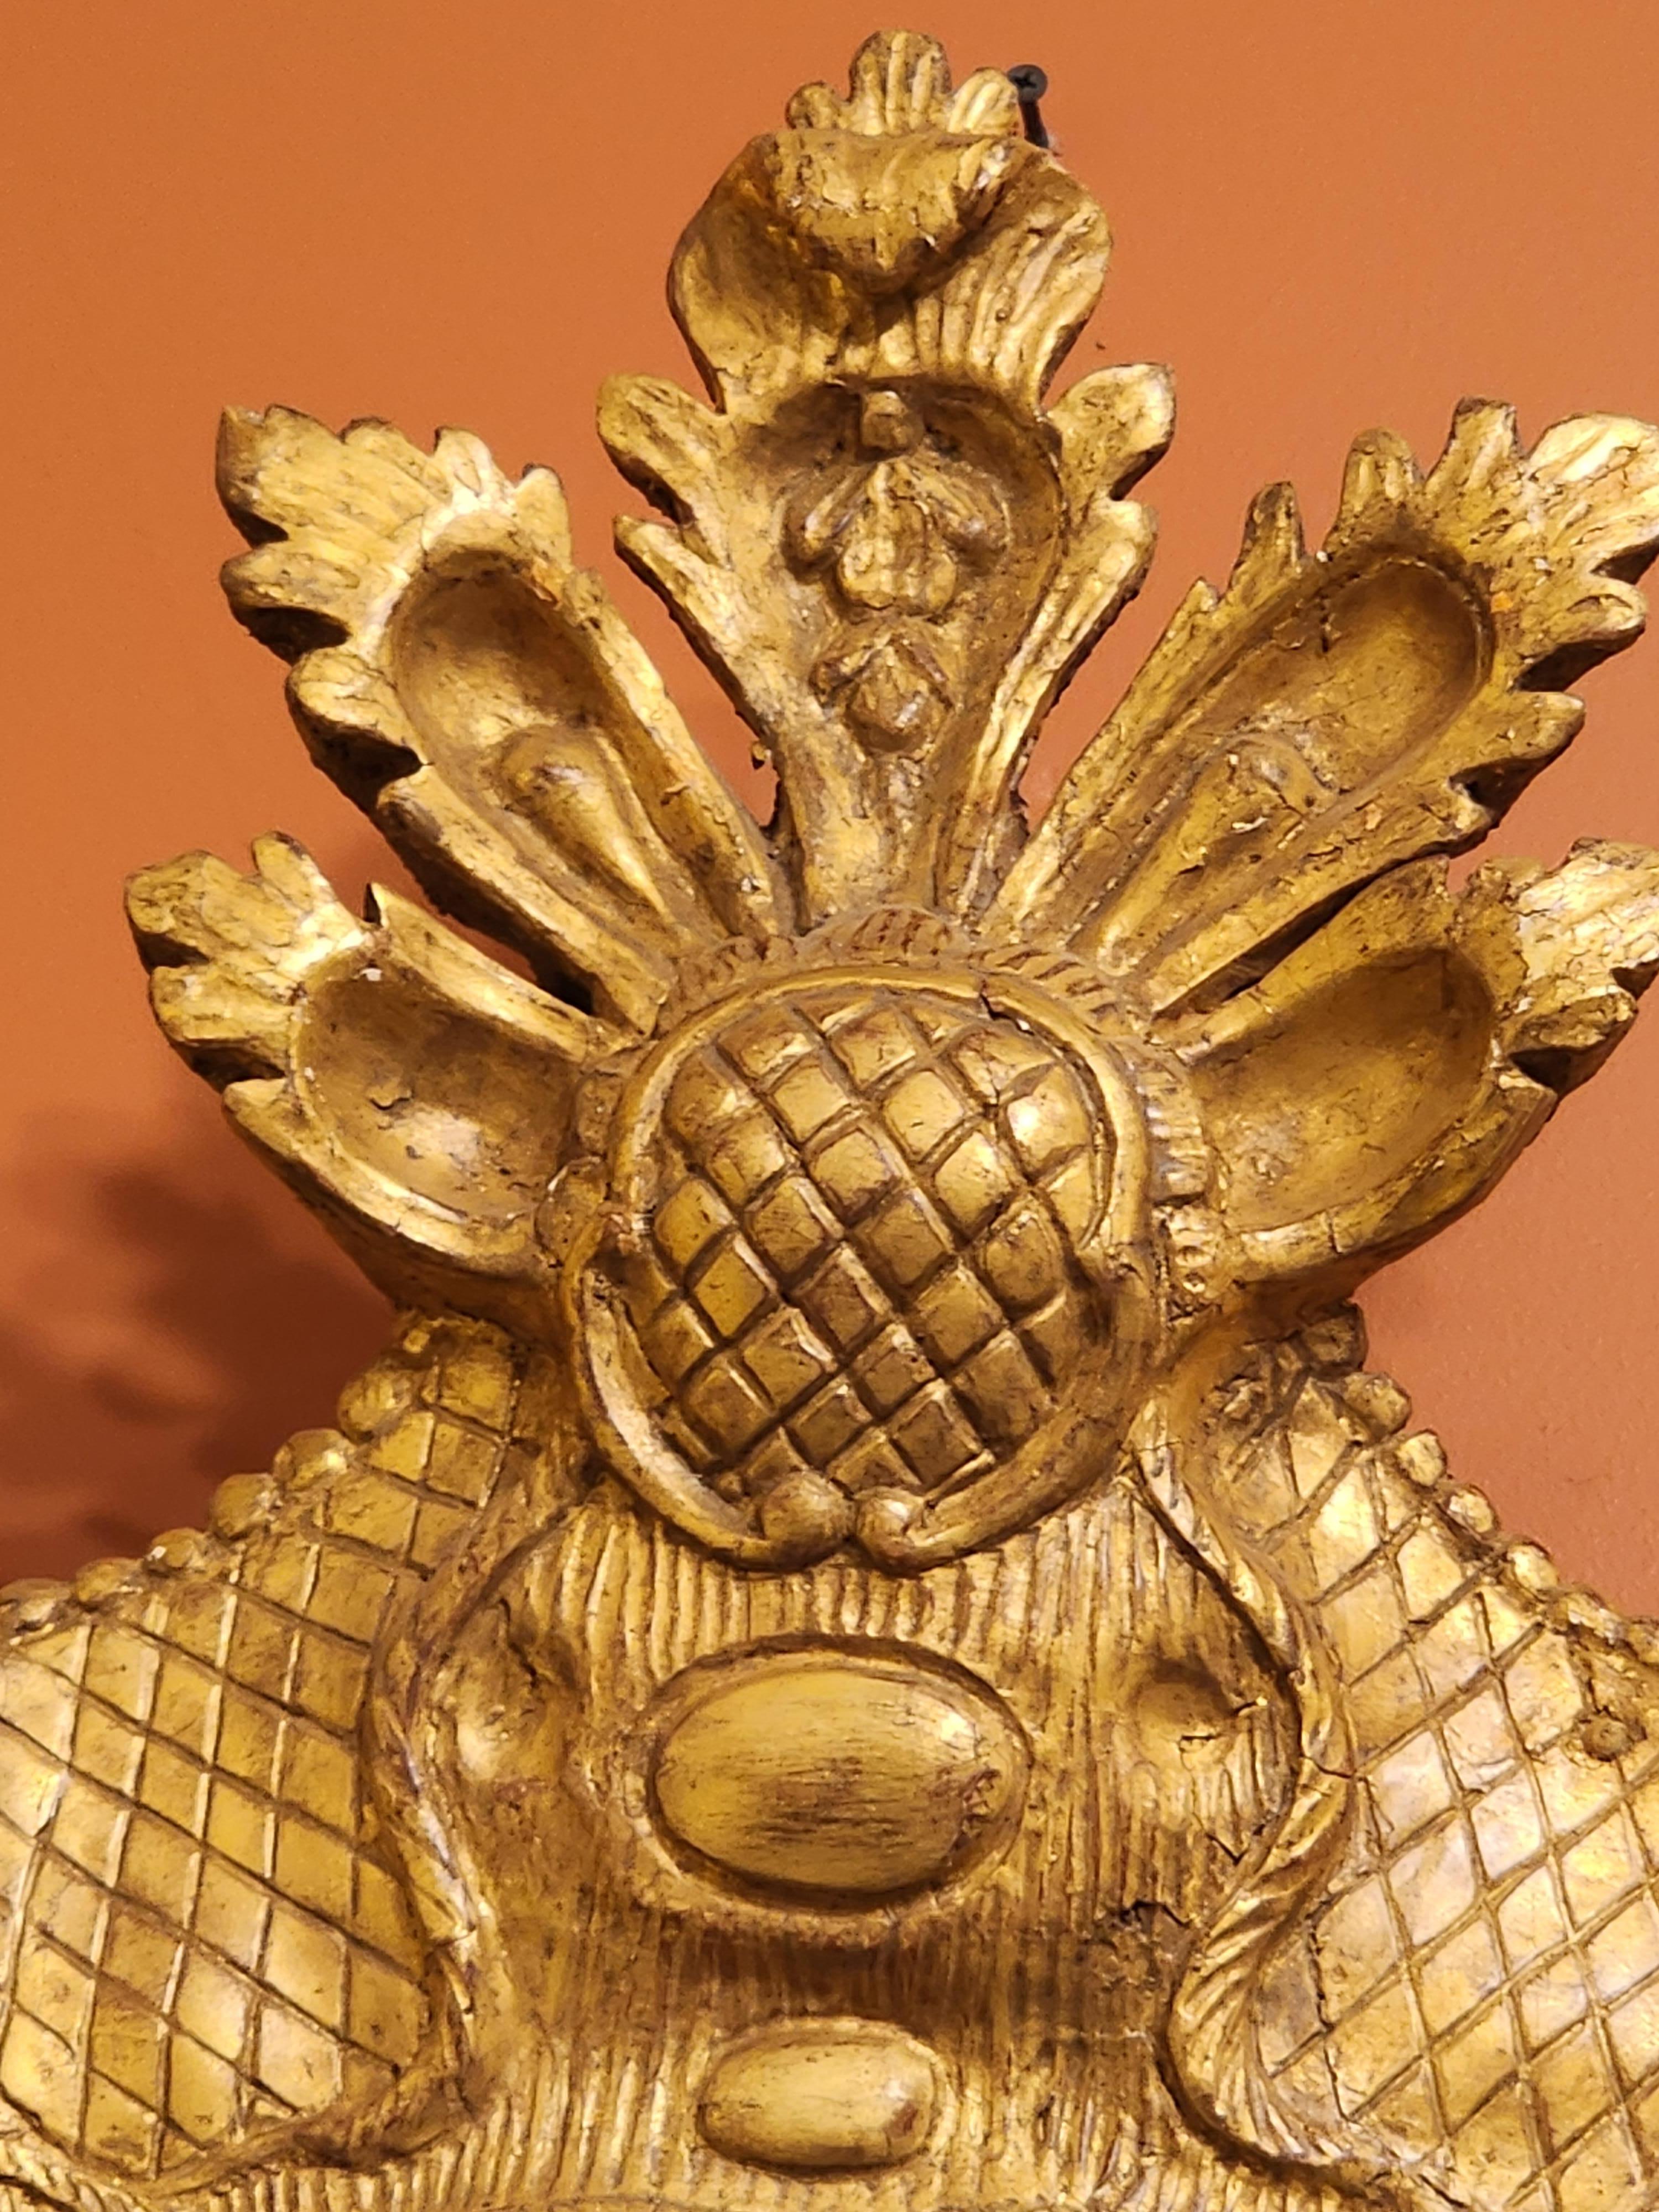 Dies ist eine schöne Hand geschnitzt, gessoed und vergoldet George II Spiegel. Sie stammt aus der Mitte des achtzehnten Jahrhunderts. Dieser unglaublich große Spiegel ist beeindruckend und geradezu imposant. Es würde in jedem Raum, in dem Sie es